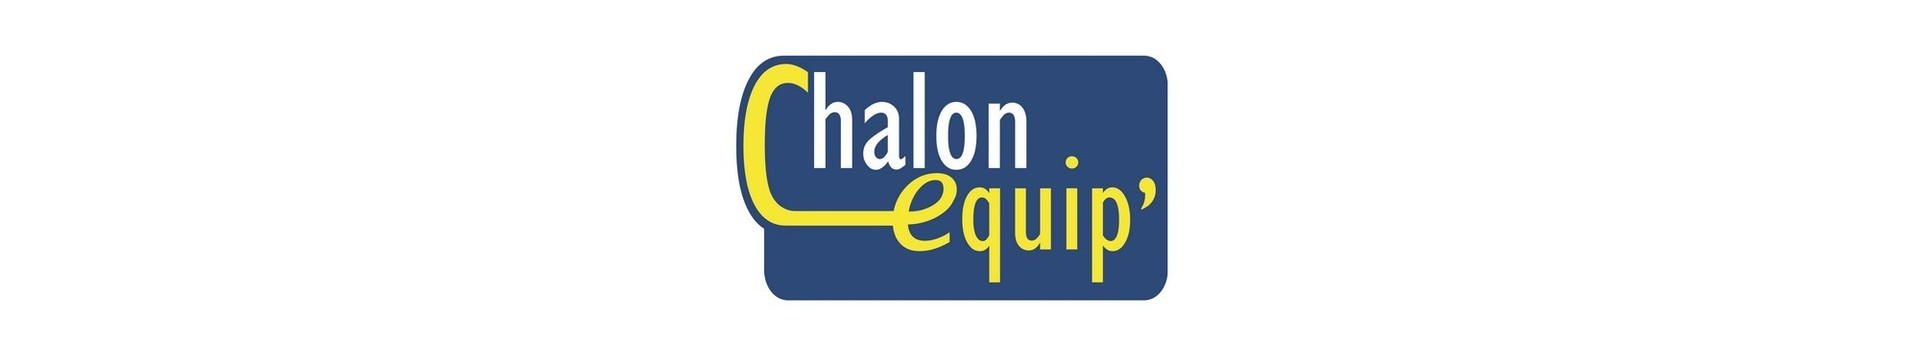 Boutique CHALON EQUIP' - Chalon-sur-Saône